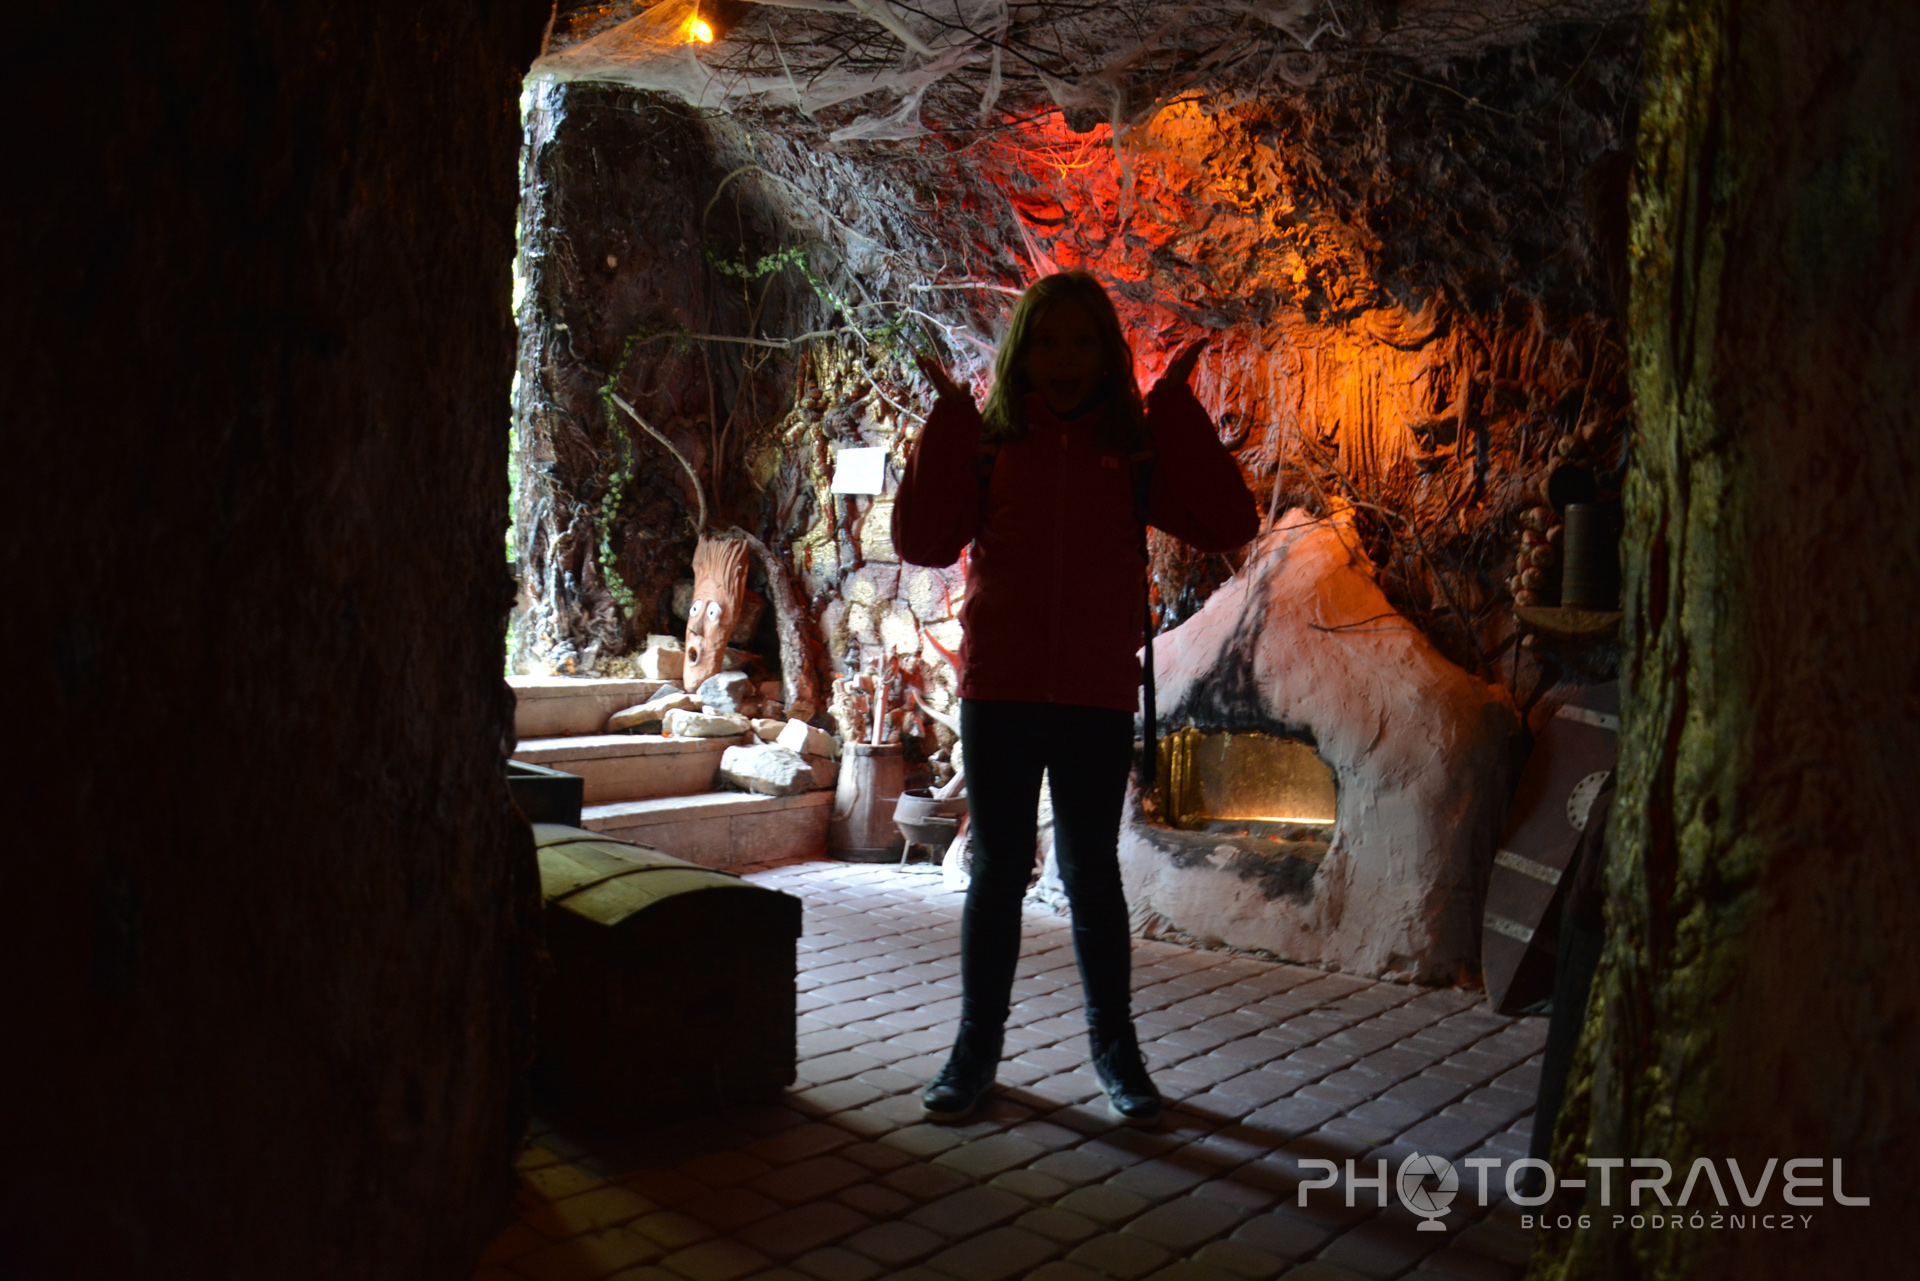 Góry Świętokrzyskie atrakcje - Babyjagowo w Hucie Szklanej - Jaskinia Zbója Madeja